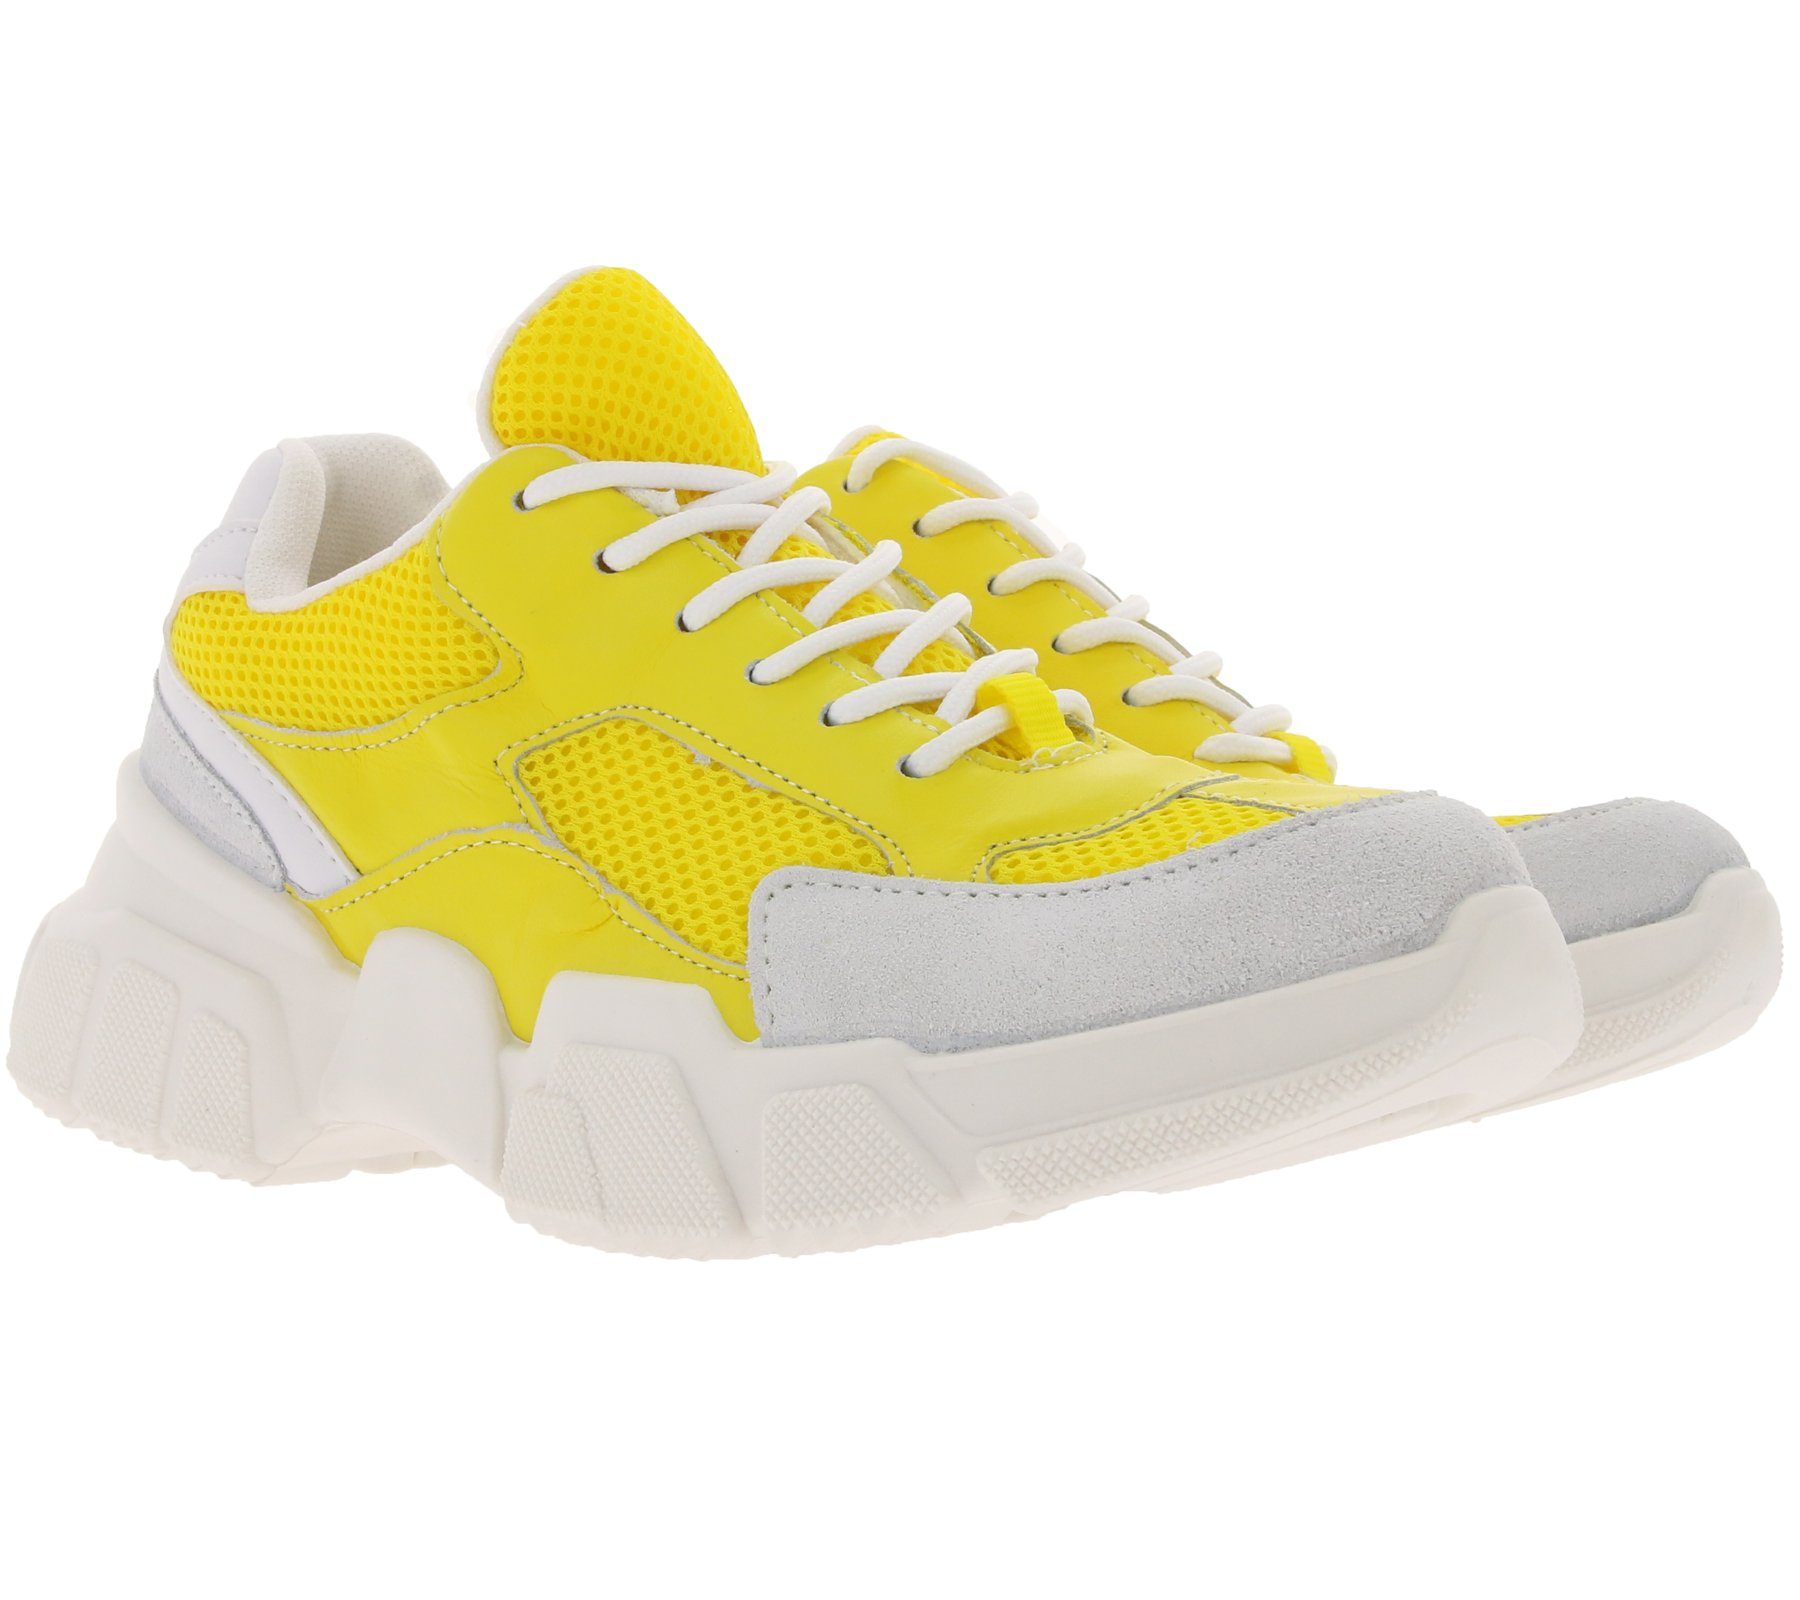 heine »heine Schuhe auffällige Damen Plateau-Sneaker Turnschuhe im Retro  Look Gelb« Sneaker online kaufen | OTTO